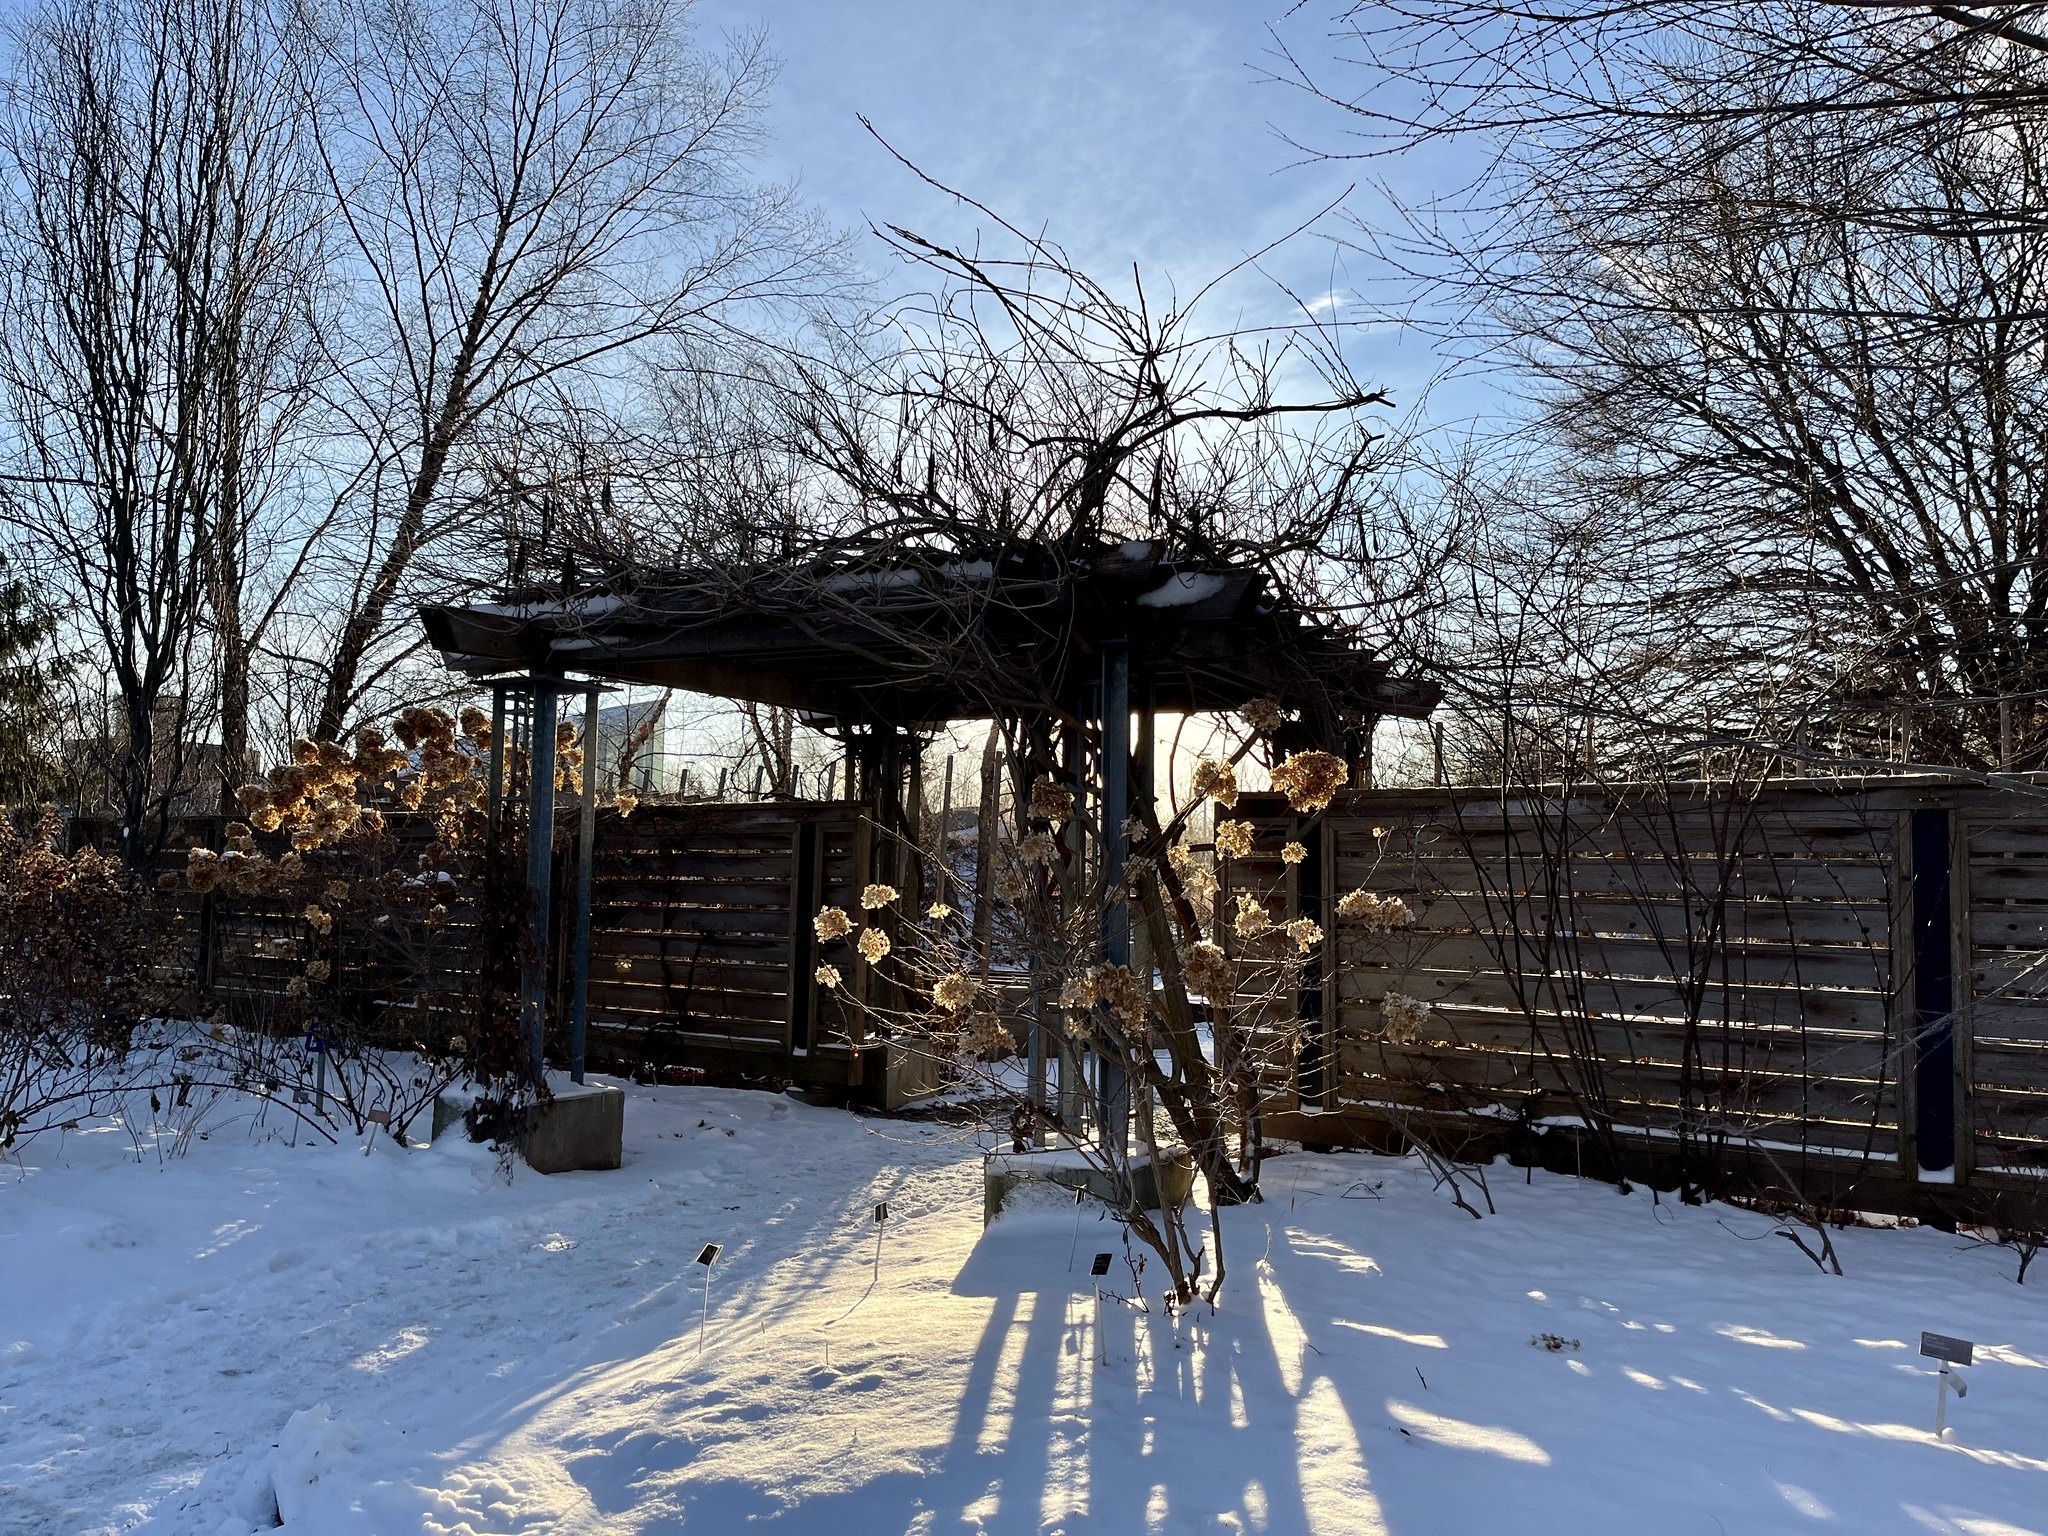 Winter archways in the Toronto Botanical Garden